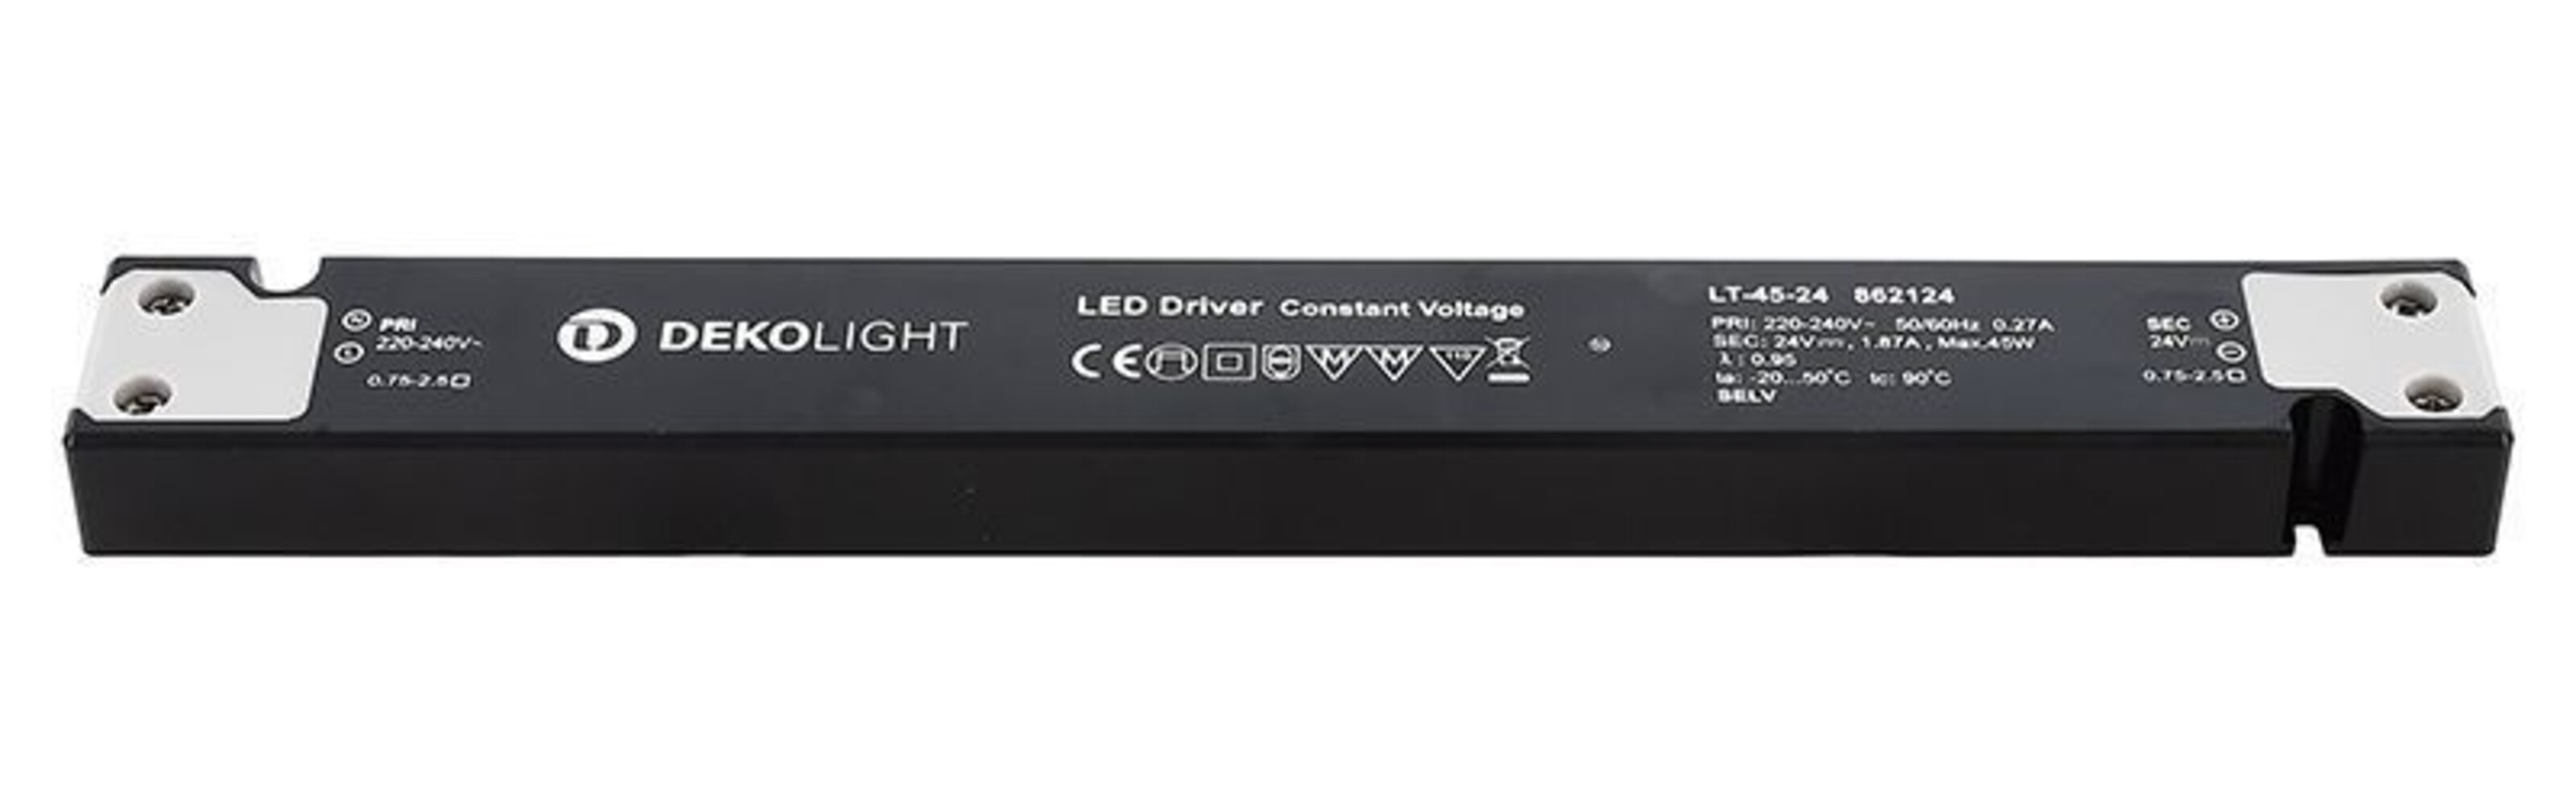 Hochwertiges und zuverlässiges LED Netzteil von Deko-Light für langlebige und effiziente Beleuchtung